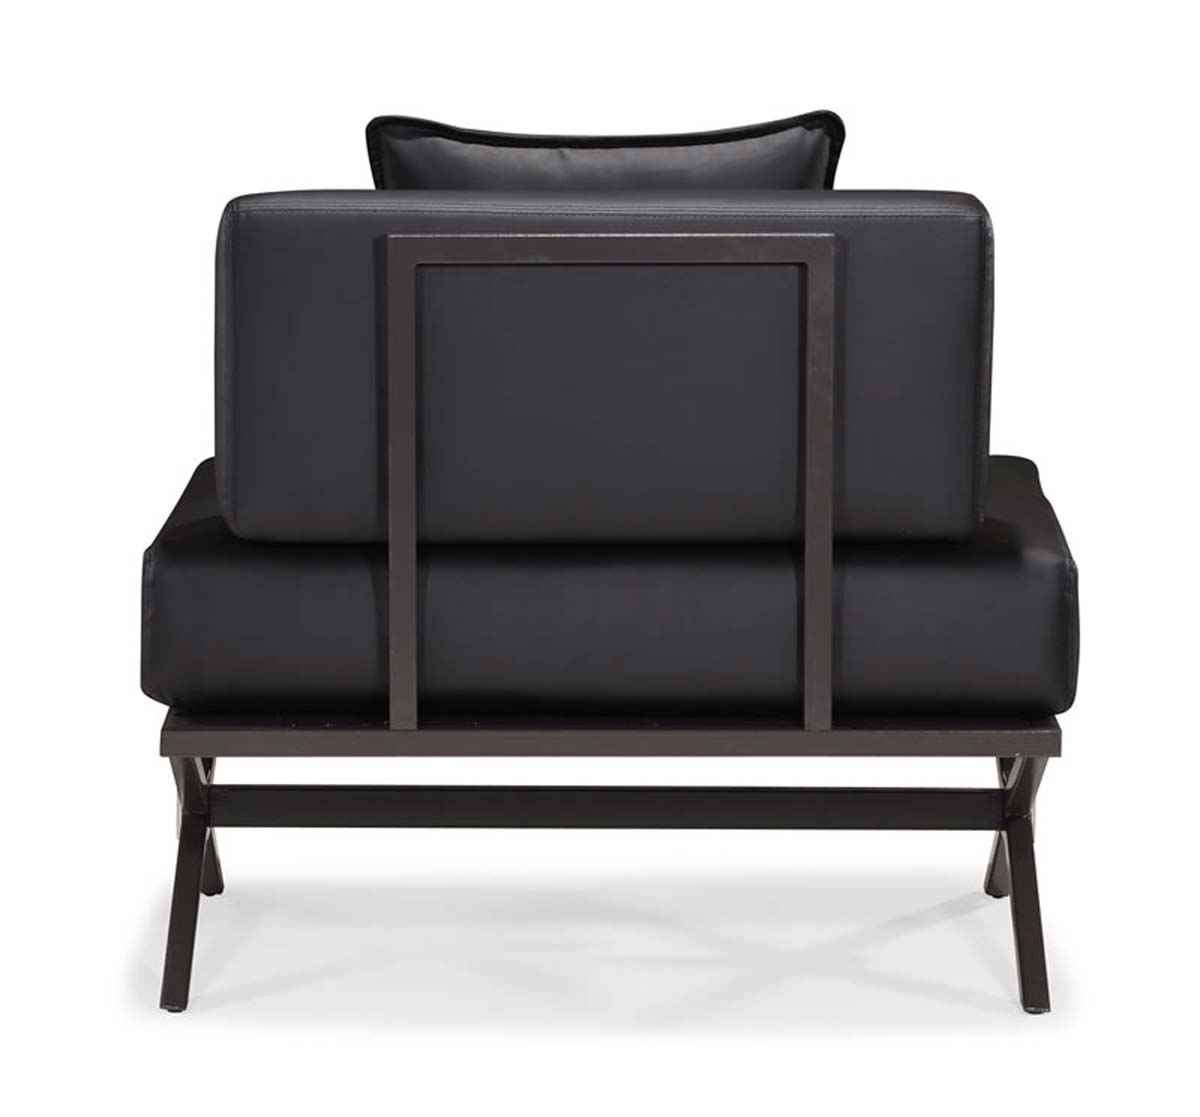 Zuo Modern Xert Modular Chair - Black